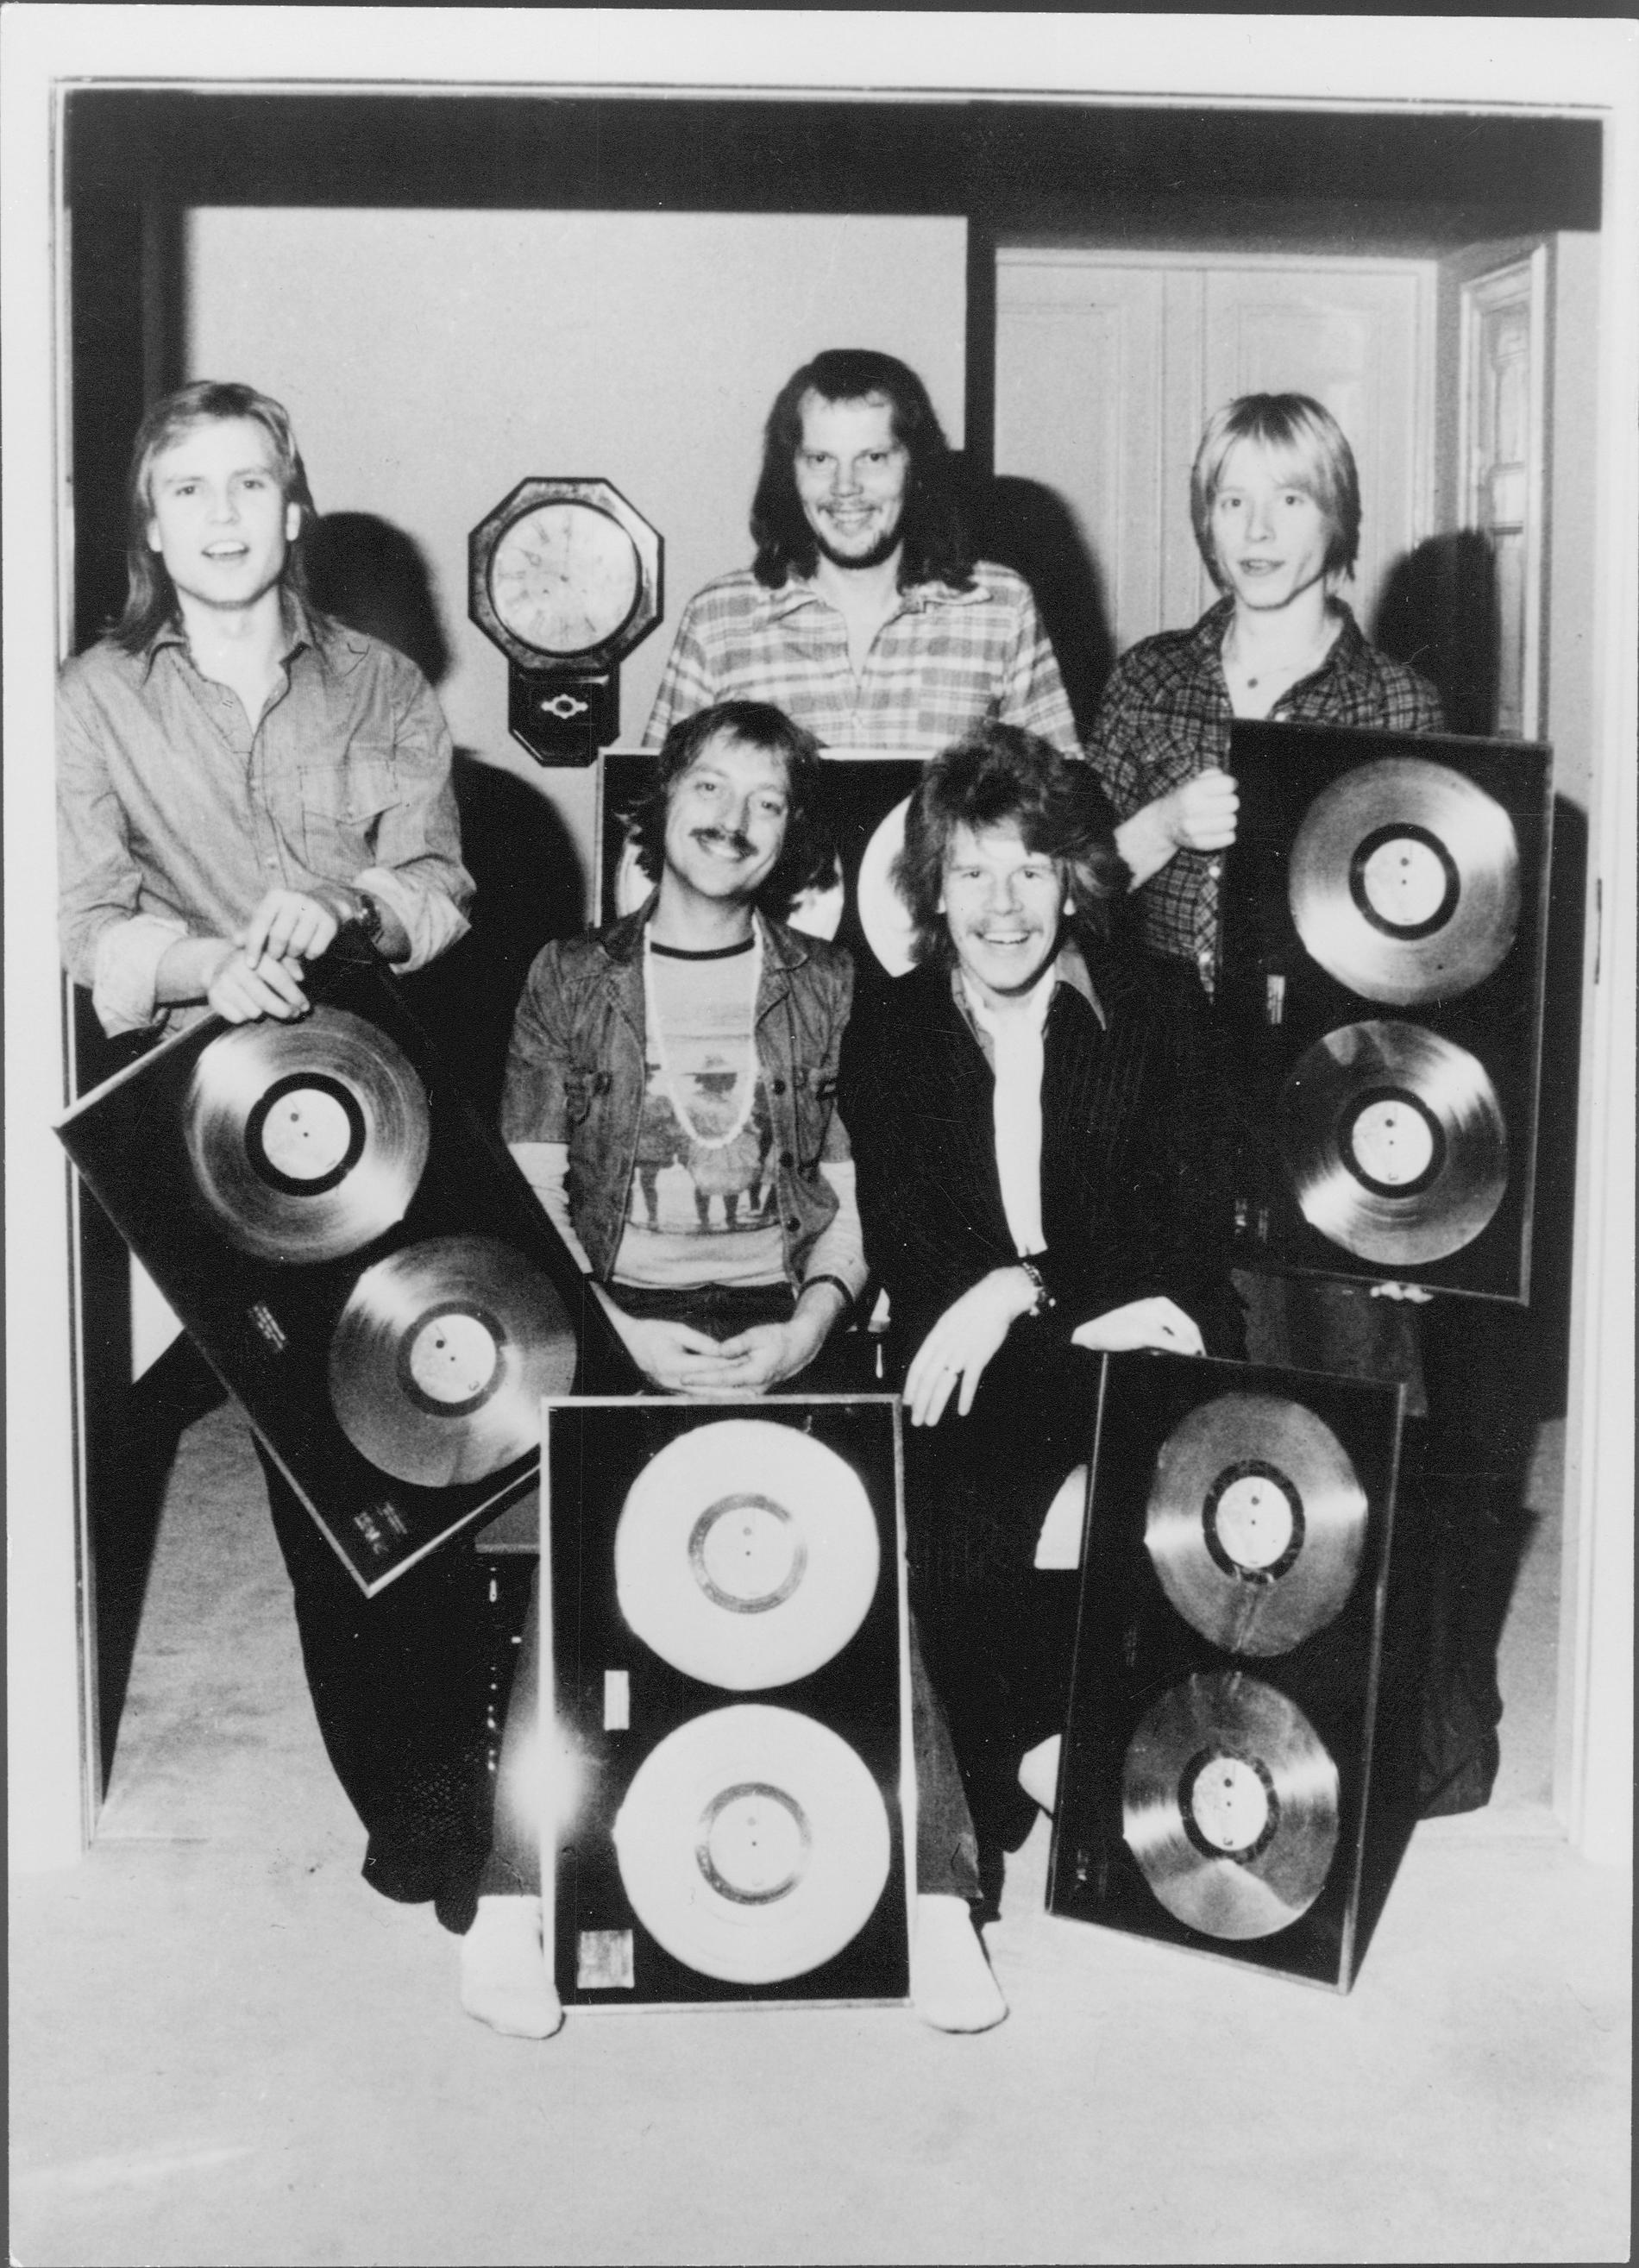  Ola Magnell (i mitten längst bak) tillsammans med Pugh Rogefeldt och bandet Rainrock har sålt 60 000 ex av plattan ”Ett steg till”.